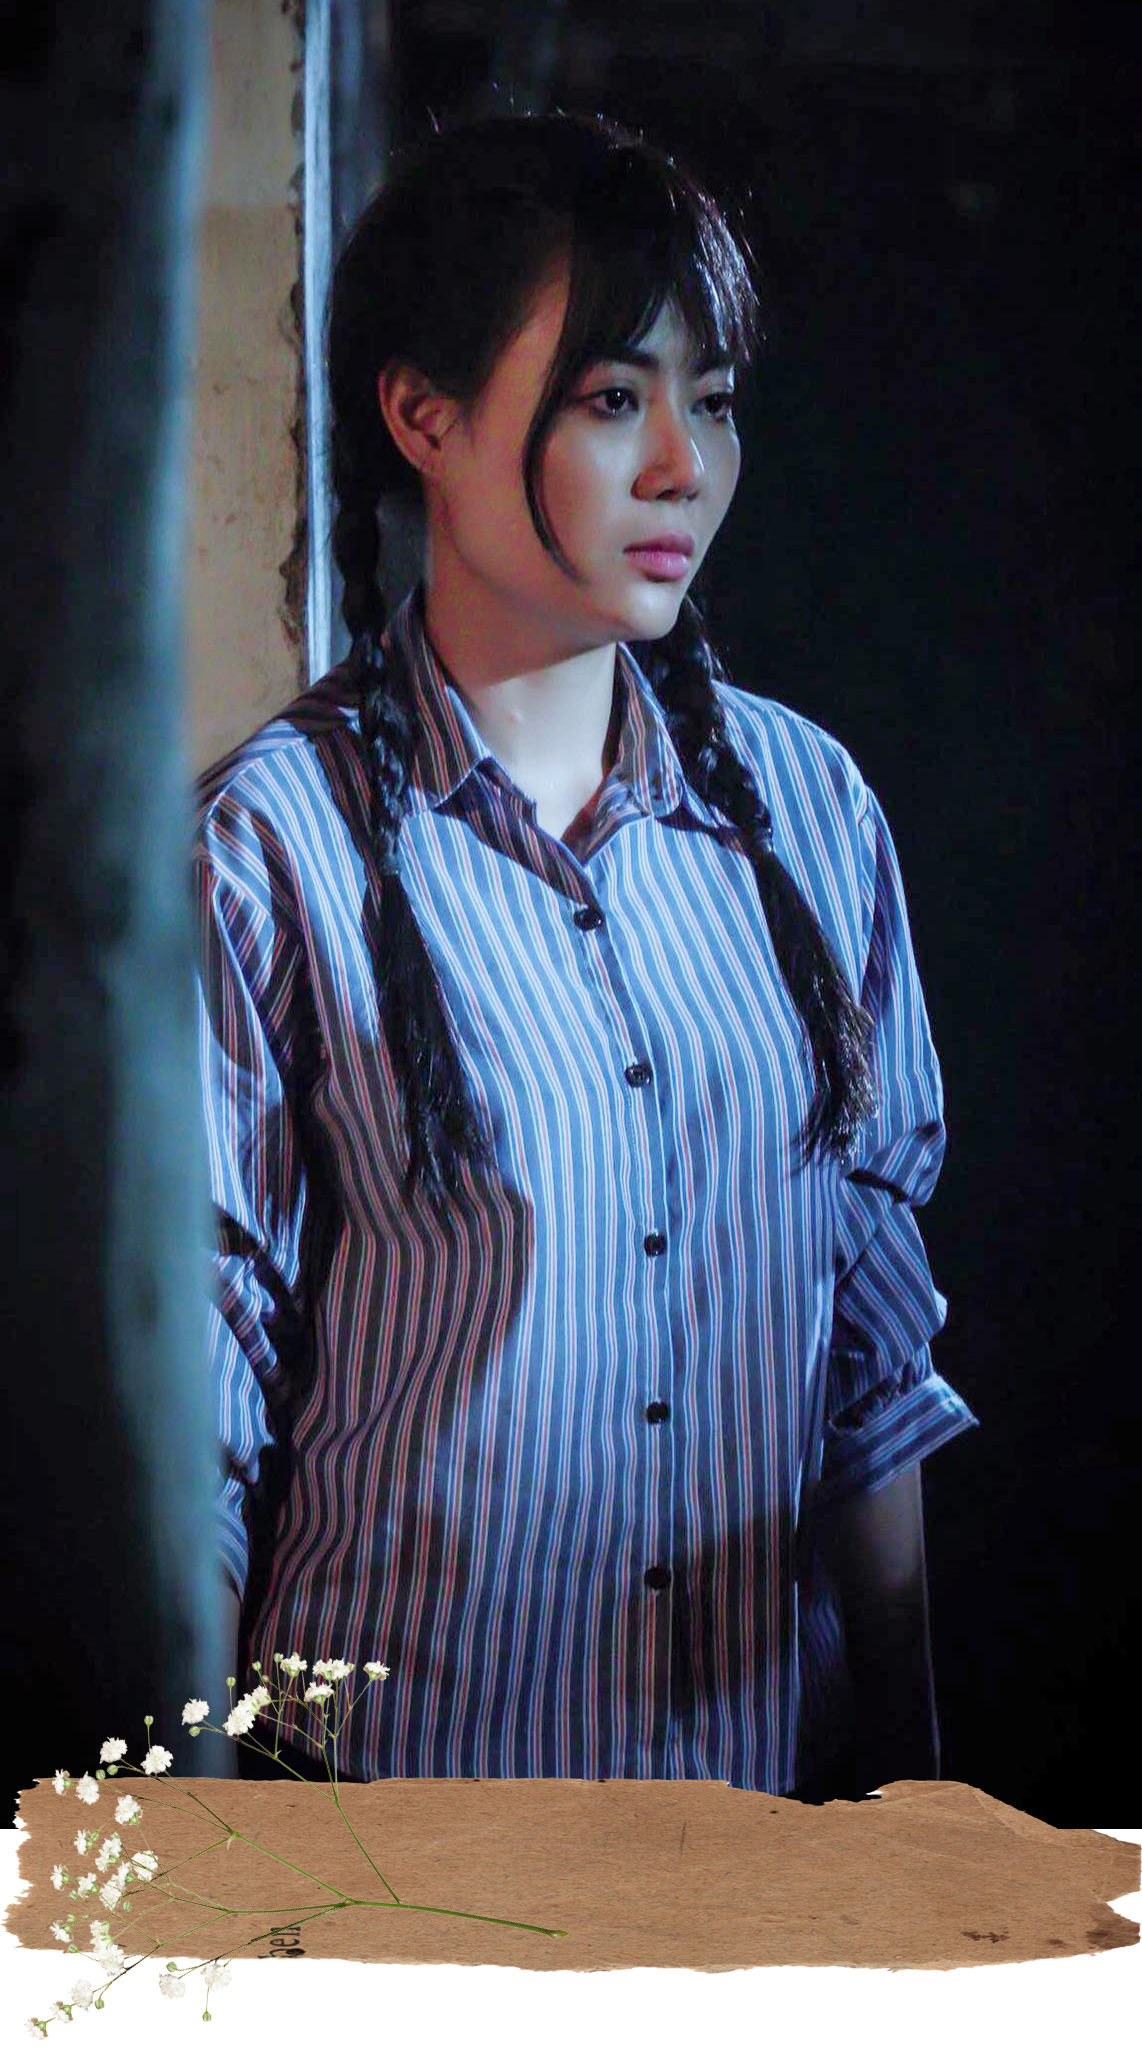 Thanh Hương cho biết, vai Lan trong bộ phim truyền hình “Quỳnh búp bê” là vai diễn “nặng ký” nhất mà chị từng đảm nhận. (Ảnh: Nghệ sỹ cung cấp)